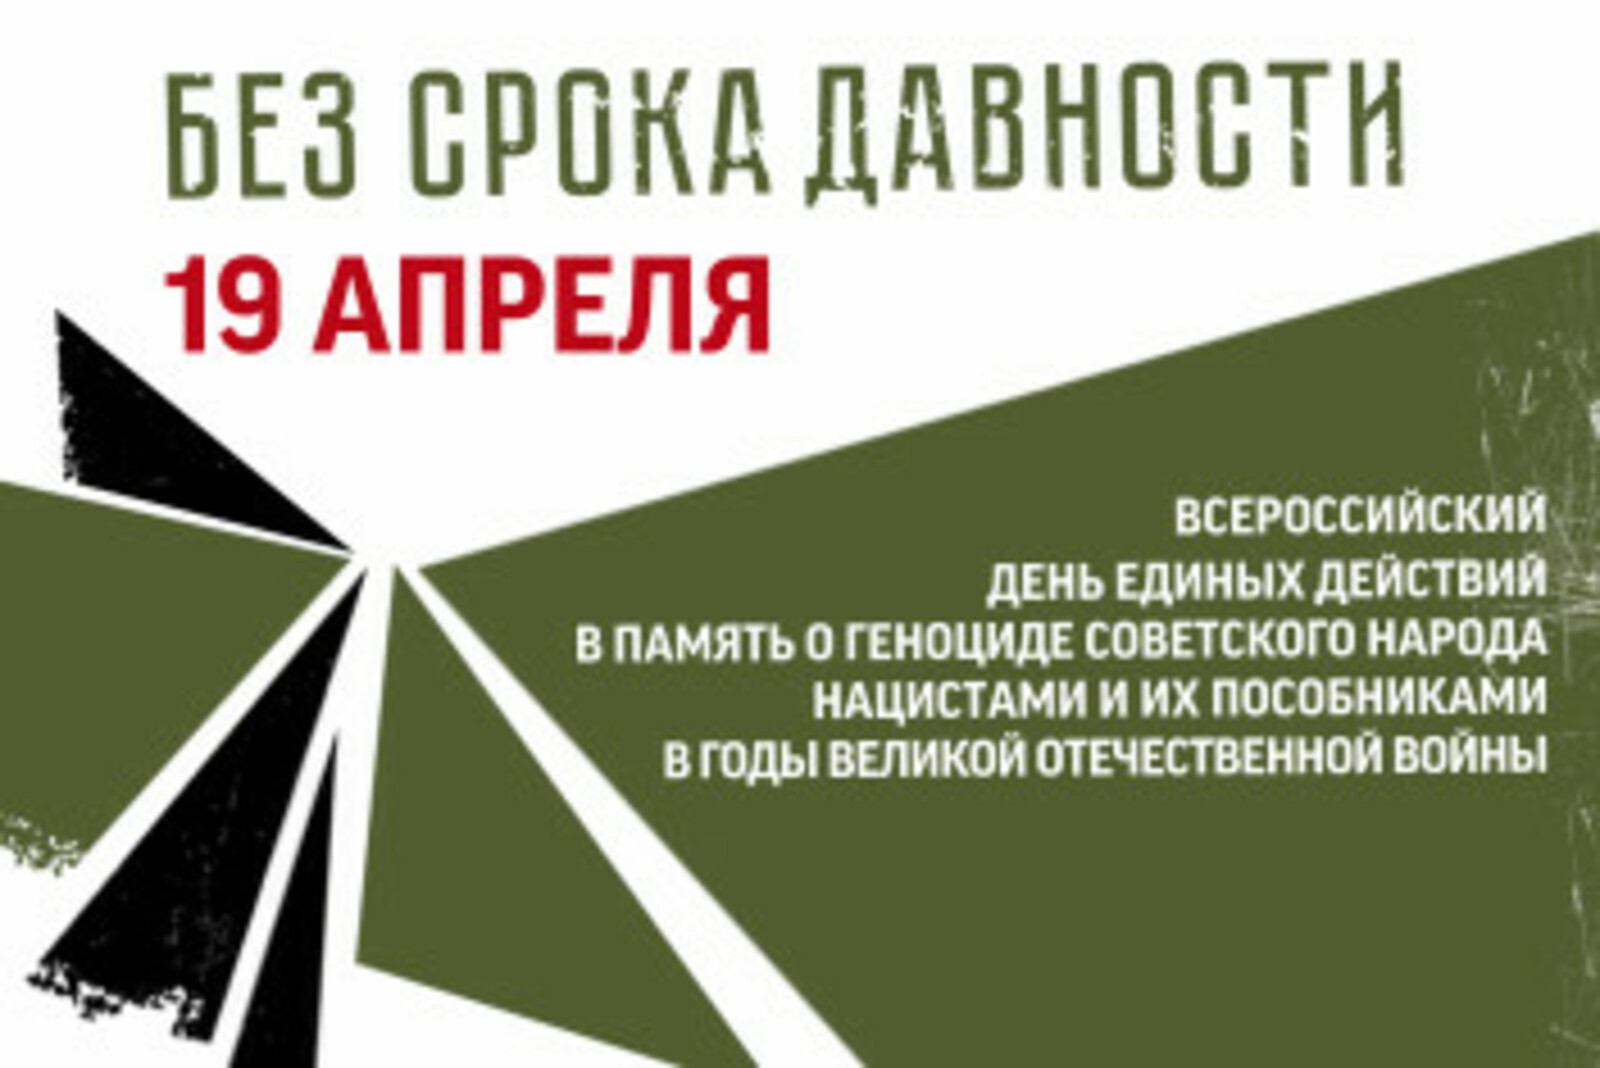 В Башкортостане пройдет День единых действий в память о геноциде советского народа нацистами и их пособниками в годы Великой Отечественной войны